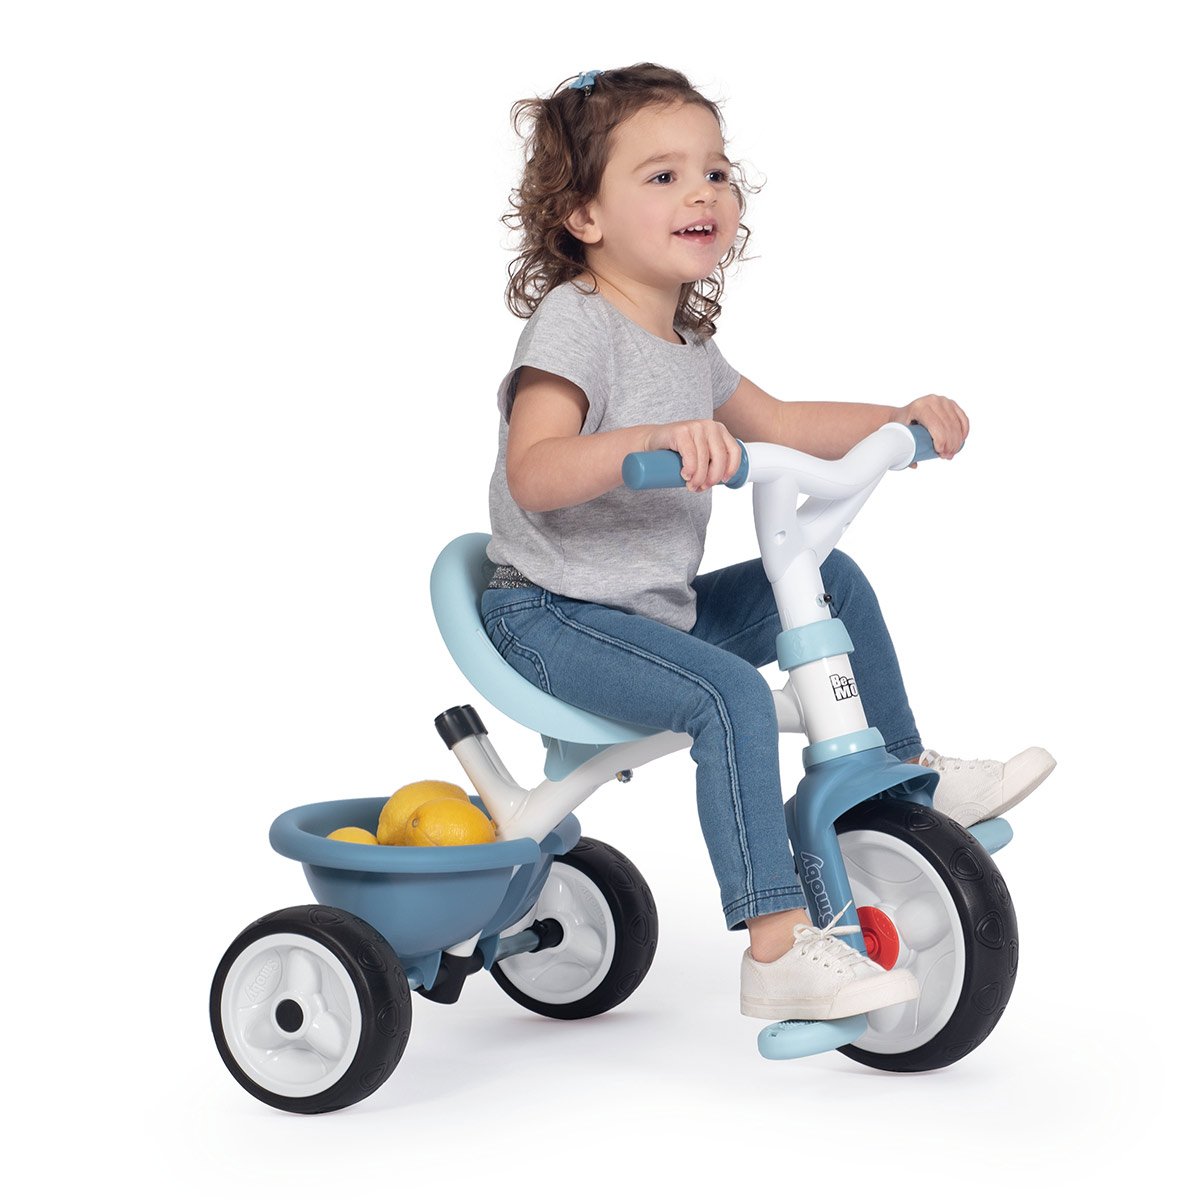 Tricycle Be Move confort bleu - La Grande Récré